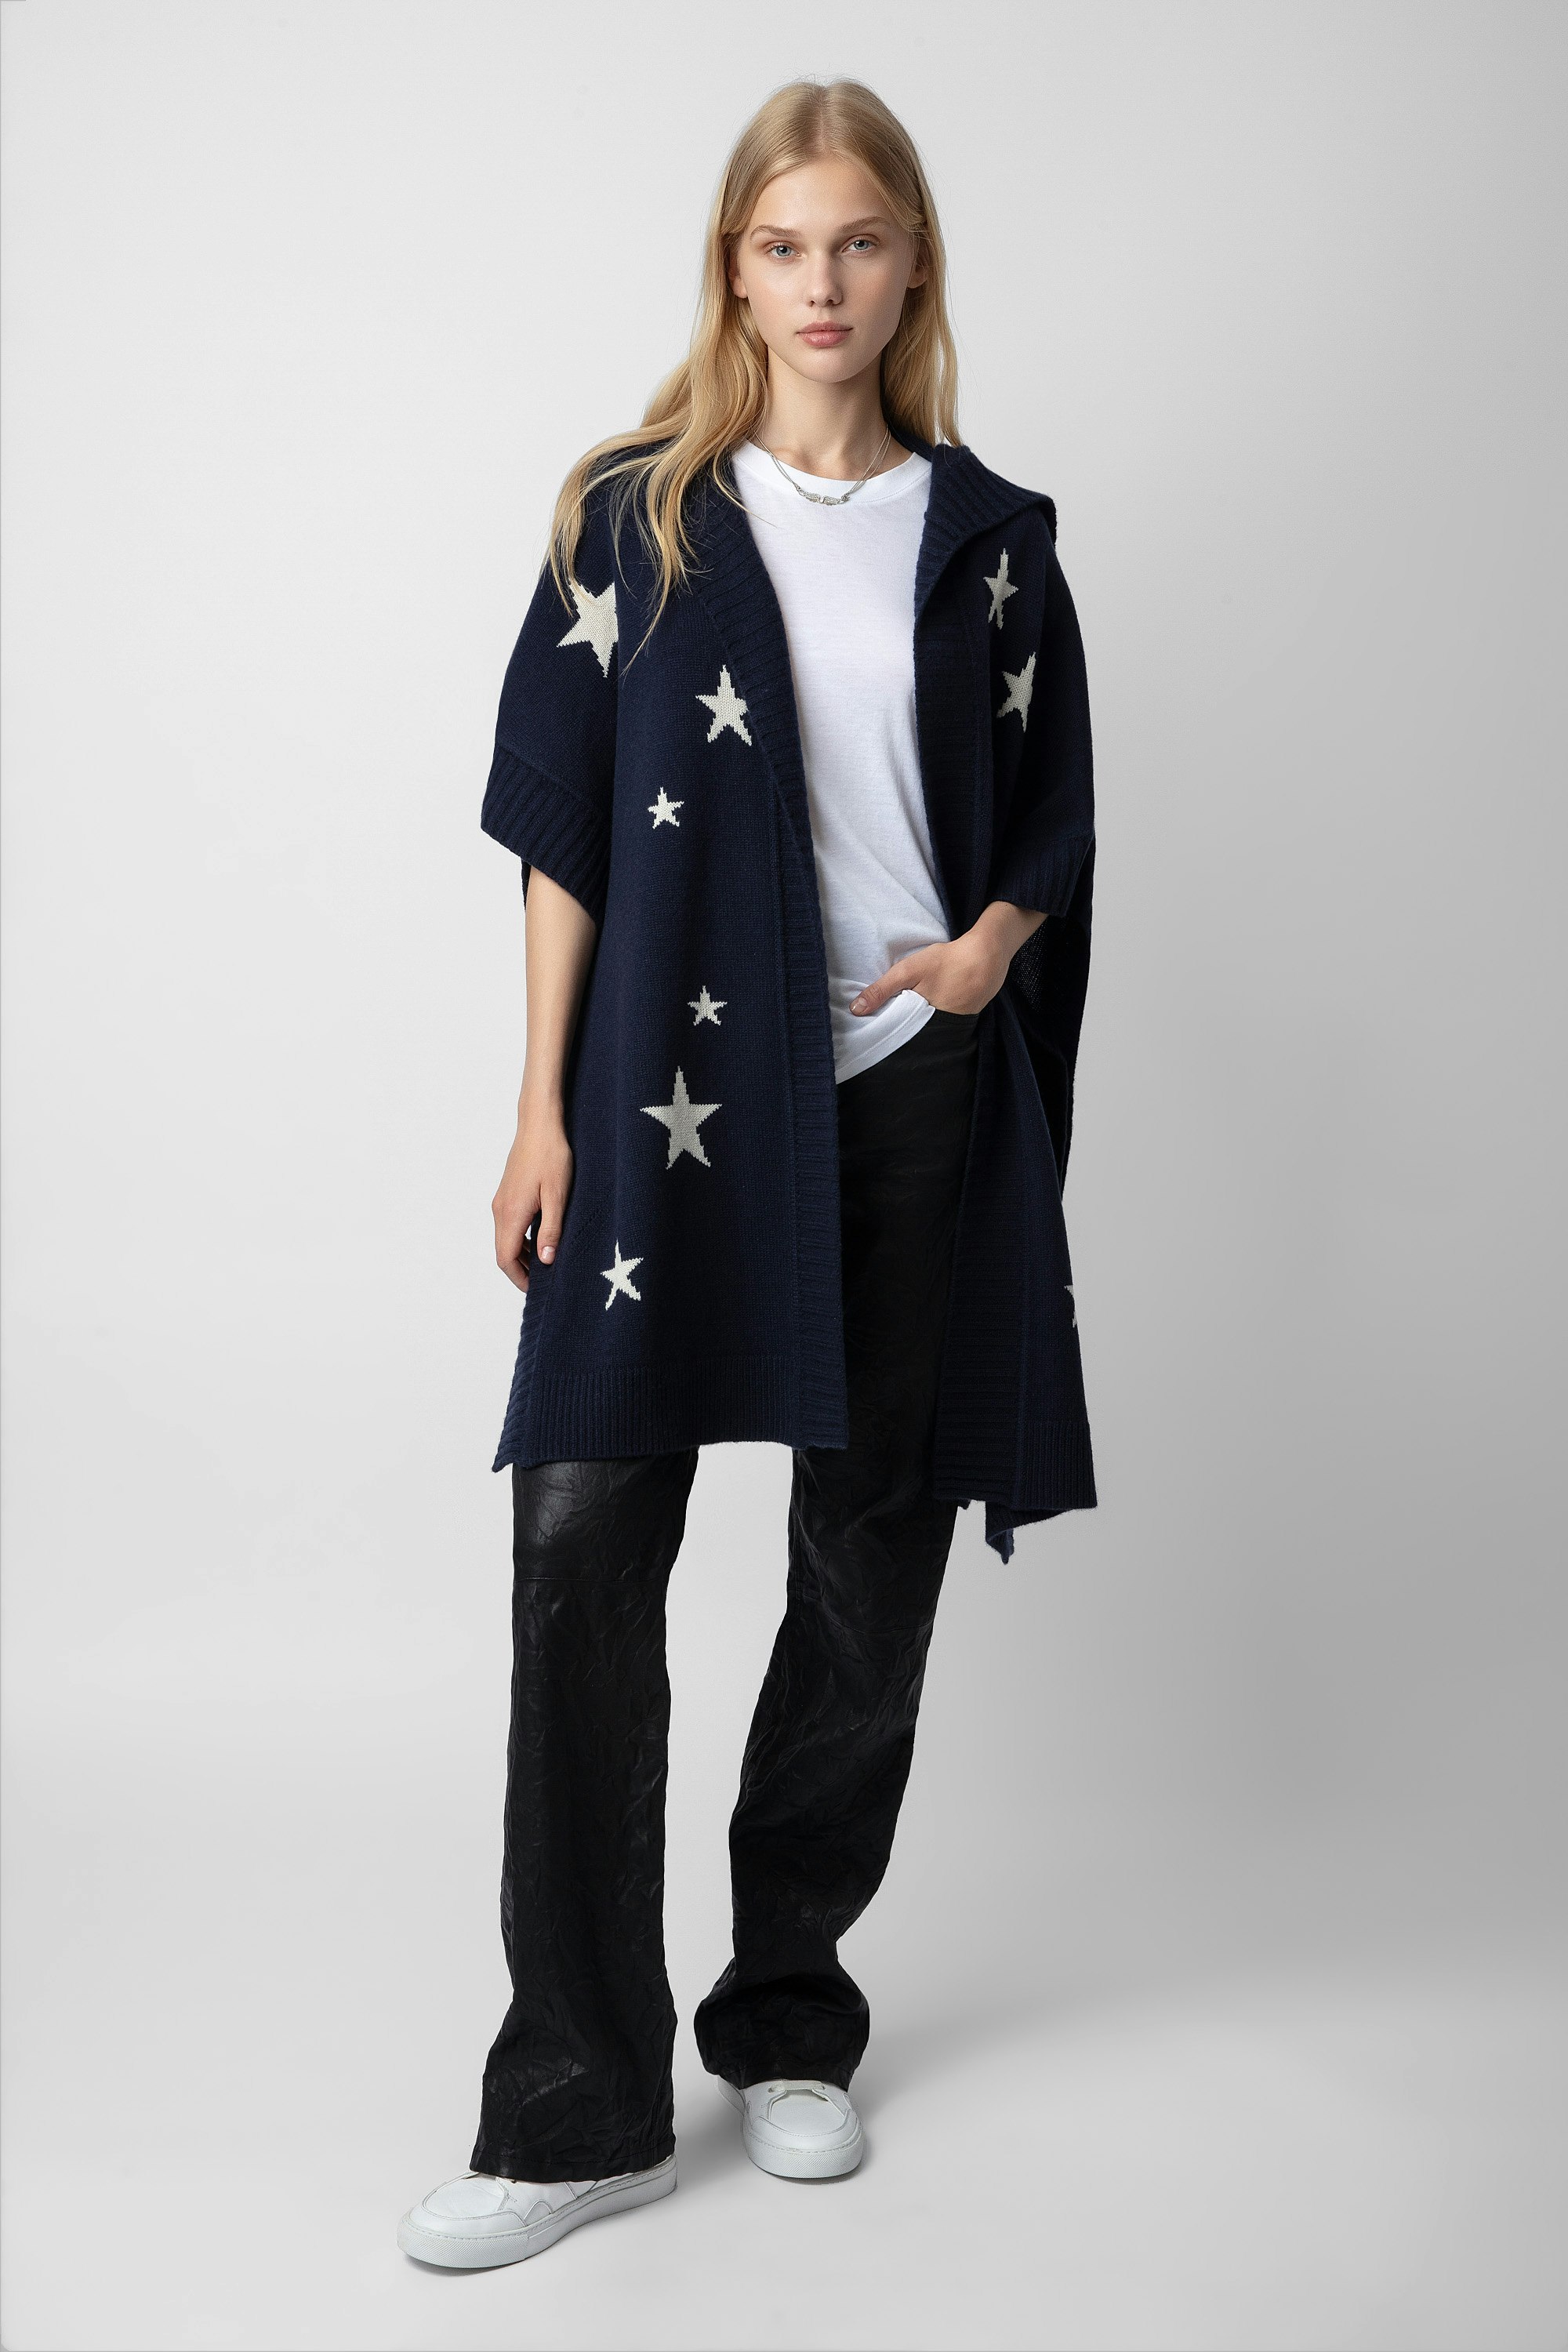 Cardigan Inna Stars Cachemire - Cardigan-cappotto lungo da donna in cashmere blu navy ornato da motivi a stelle in jacquard a intarsio.